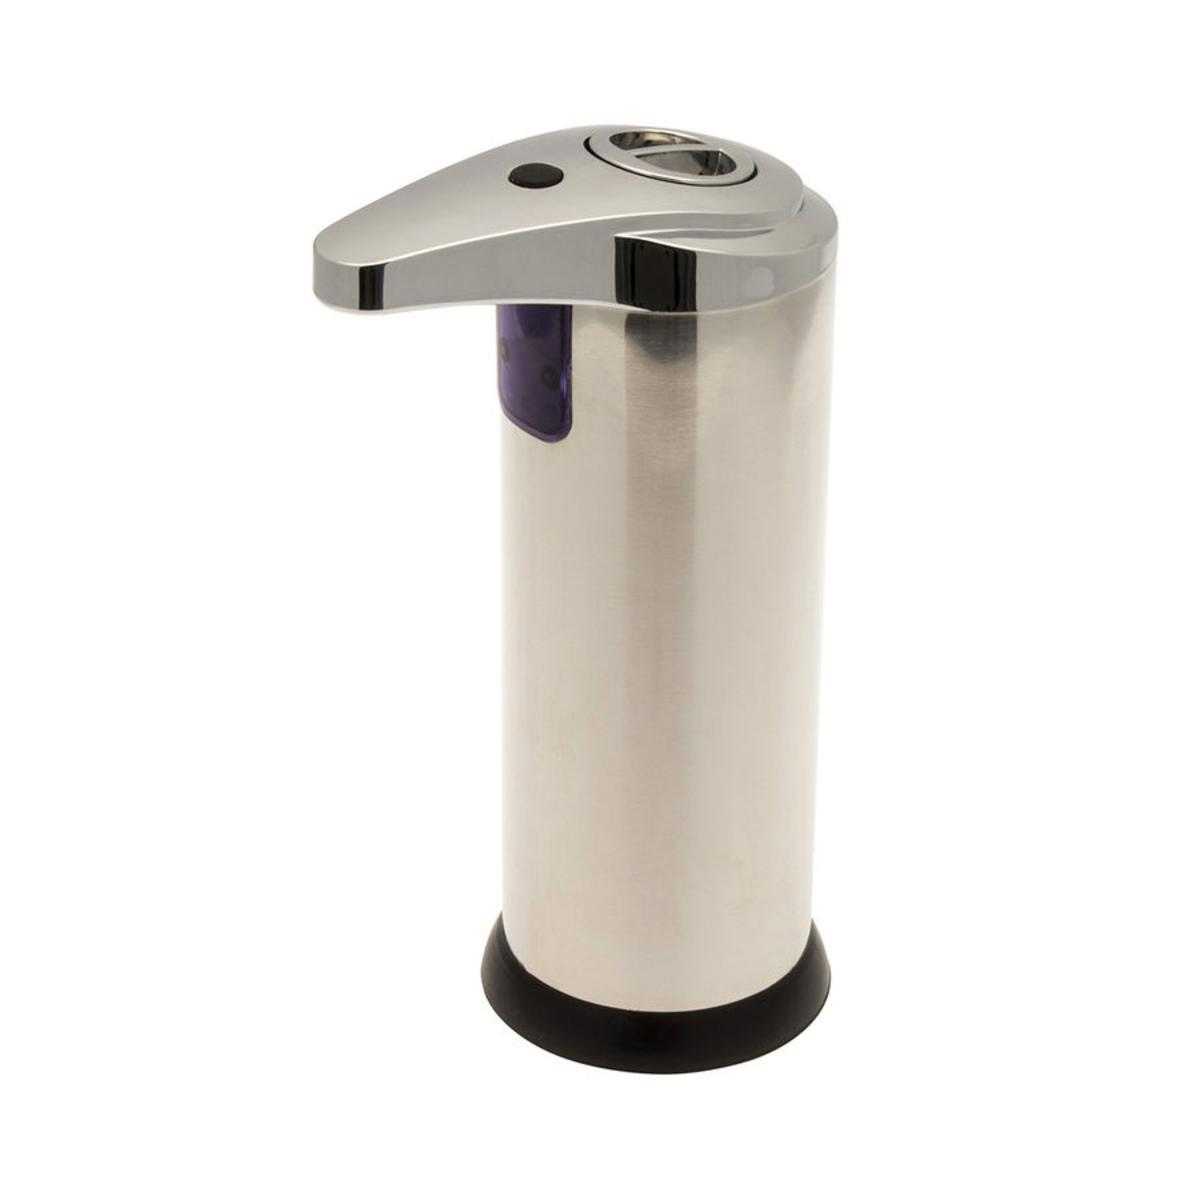 Distributeur de savon automatique en inox - 9,5 x 8,5 x 20 cm - Gris